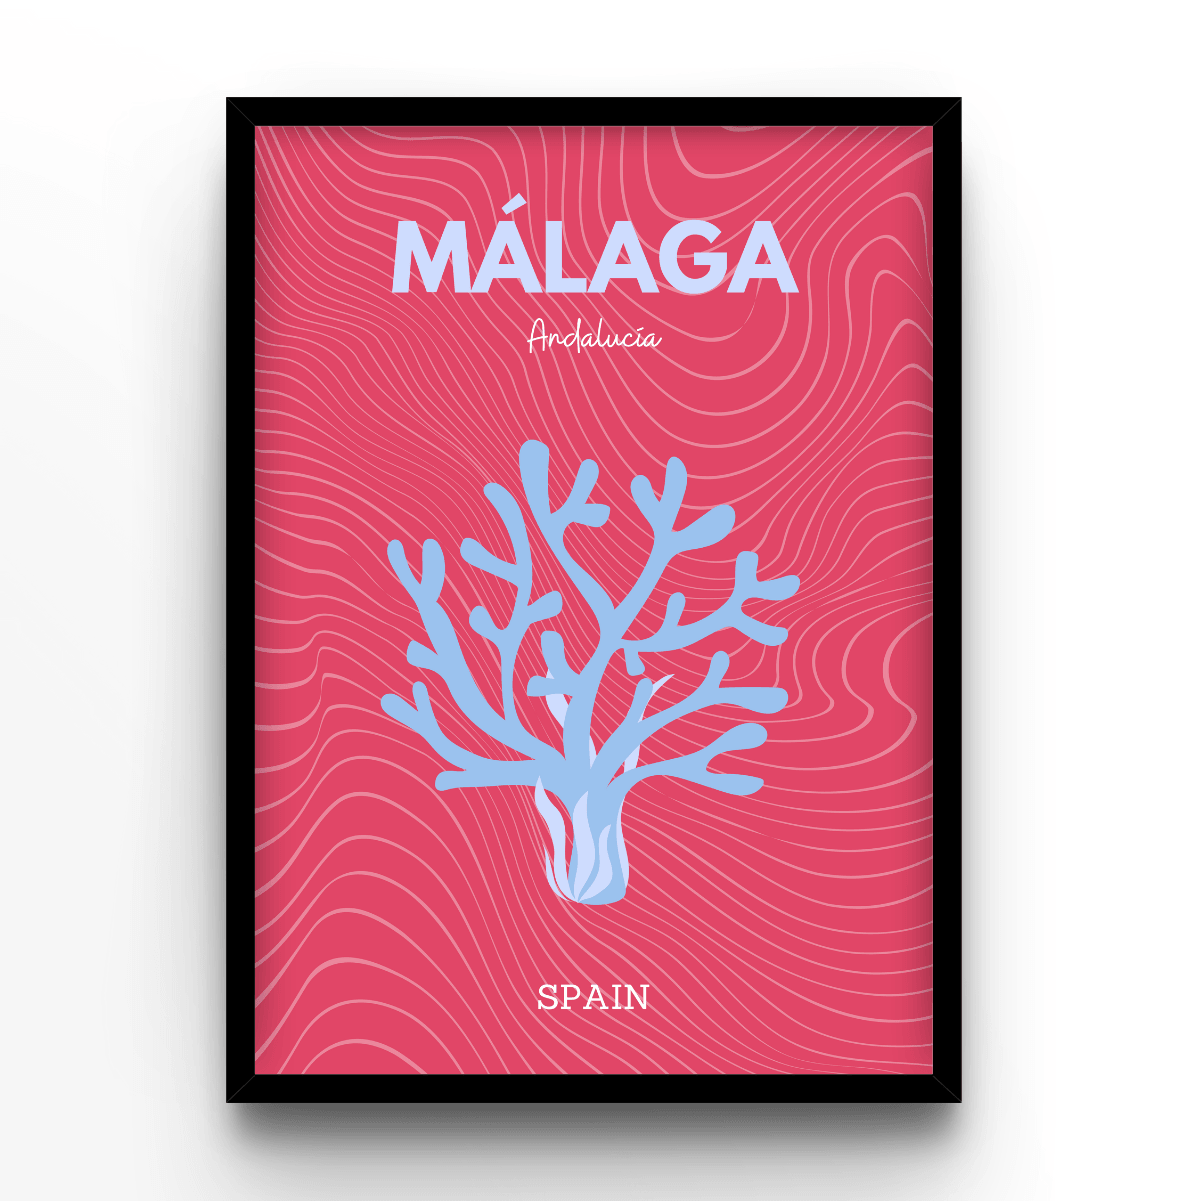 Málaga - A4, A3, A2 Posters Base - Poster Print Shop / Art Prints / PostersBase